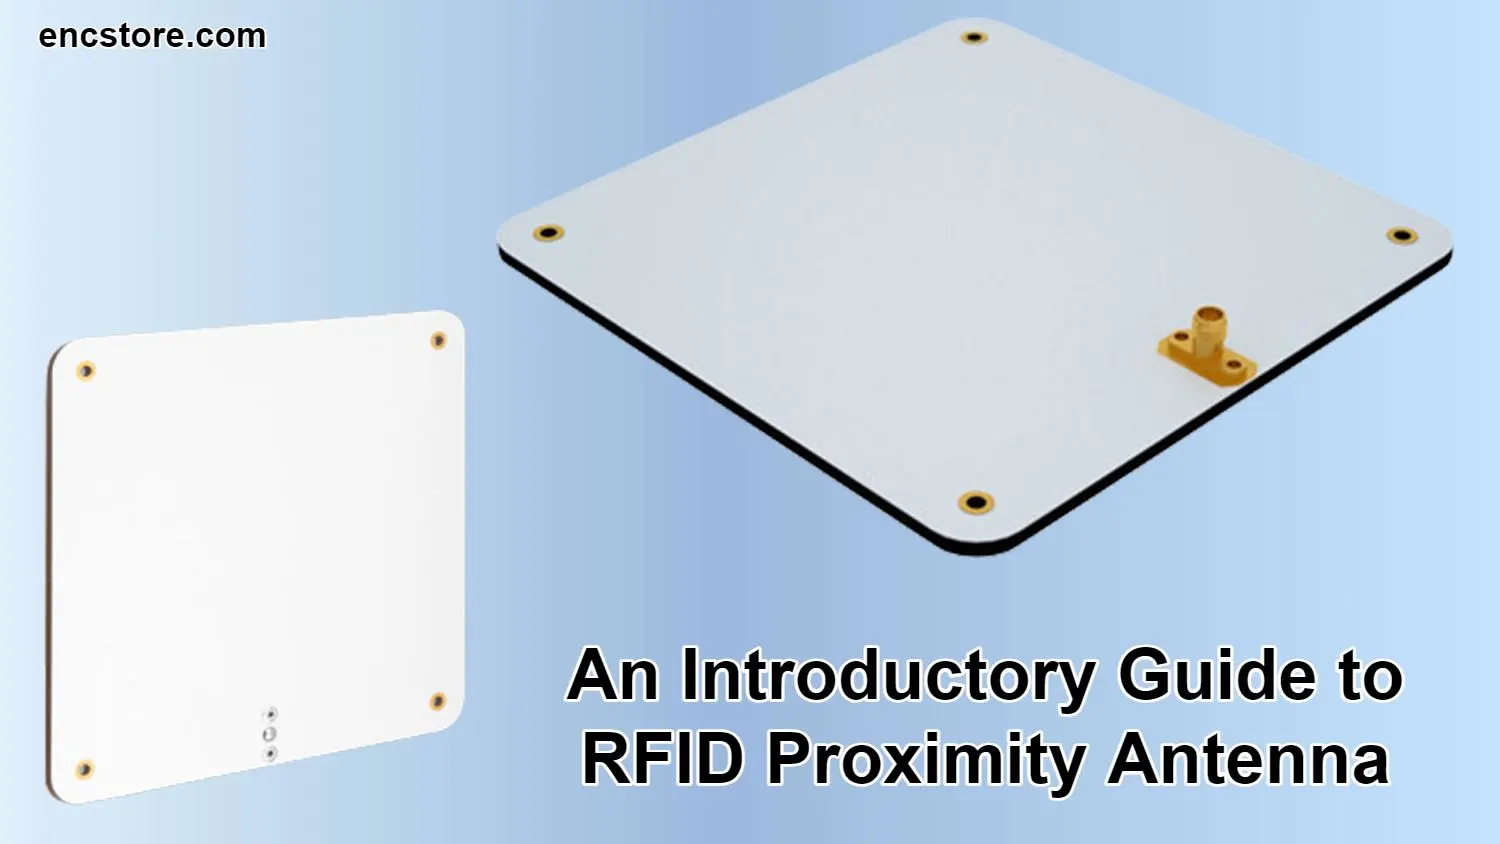 RFID Proximity Antenna